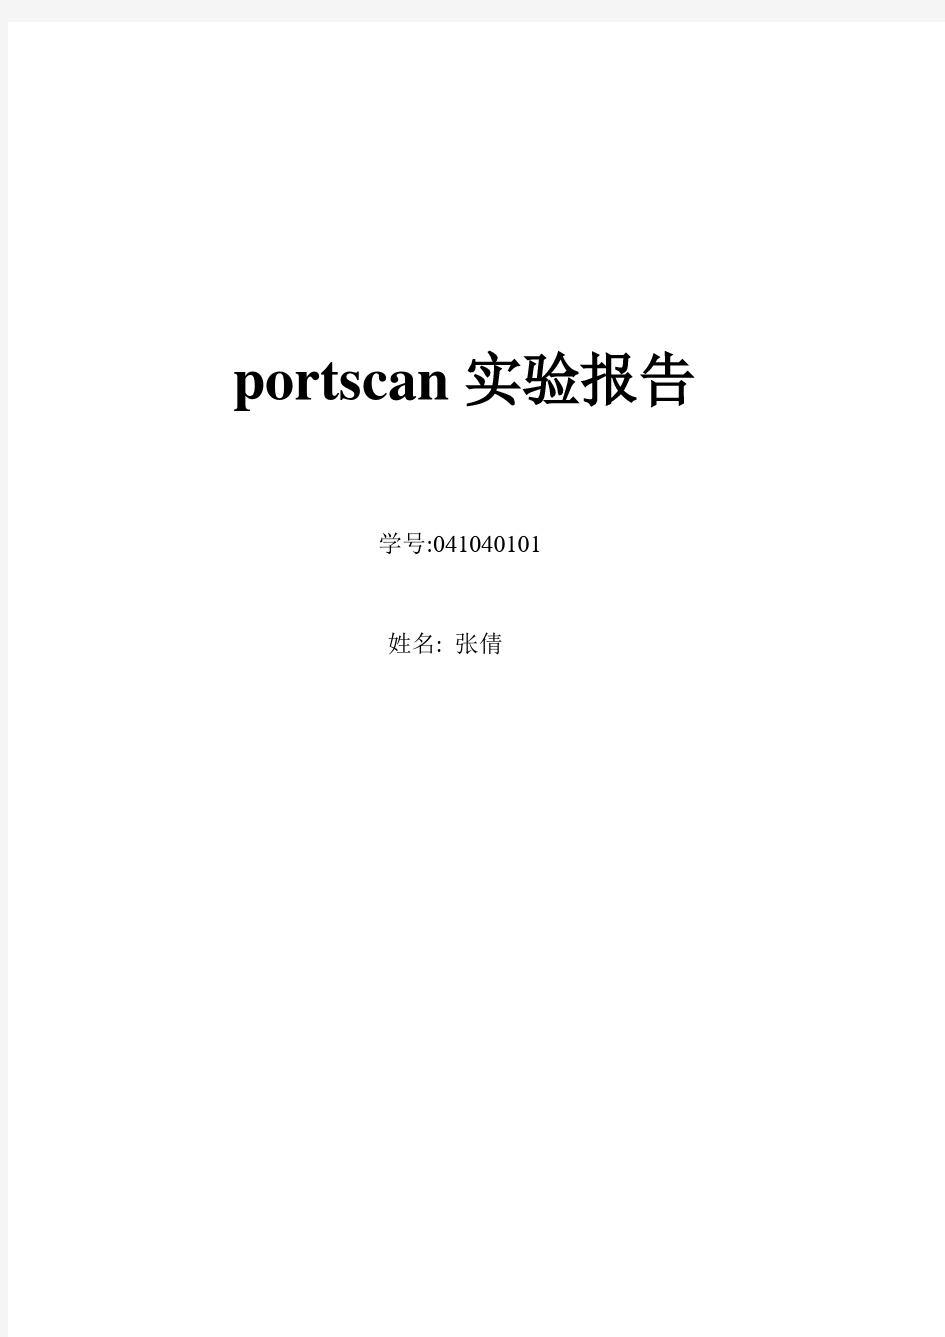 portscan实验报告